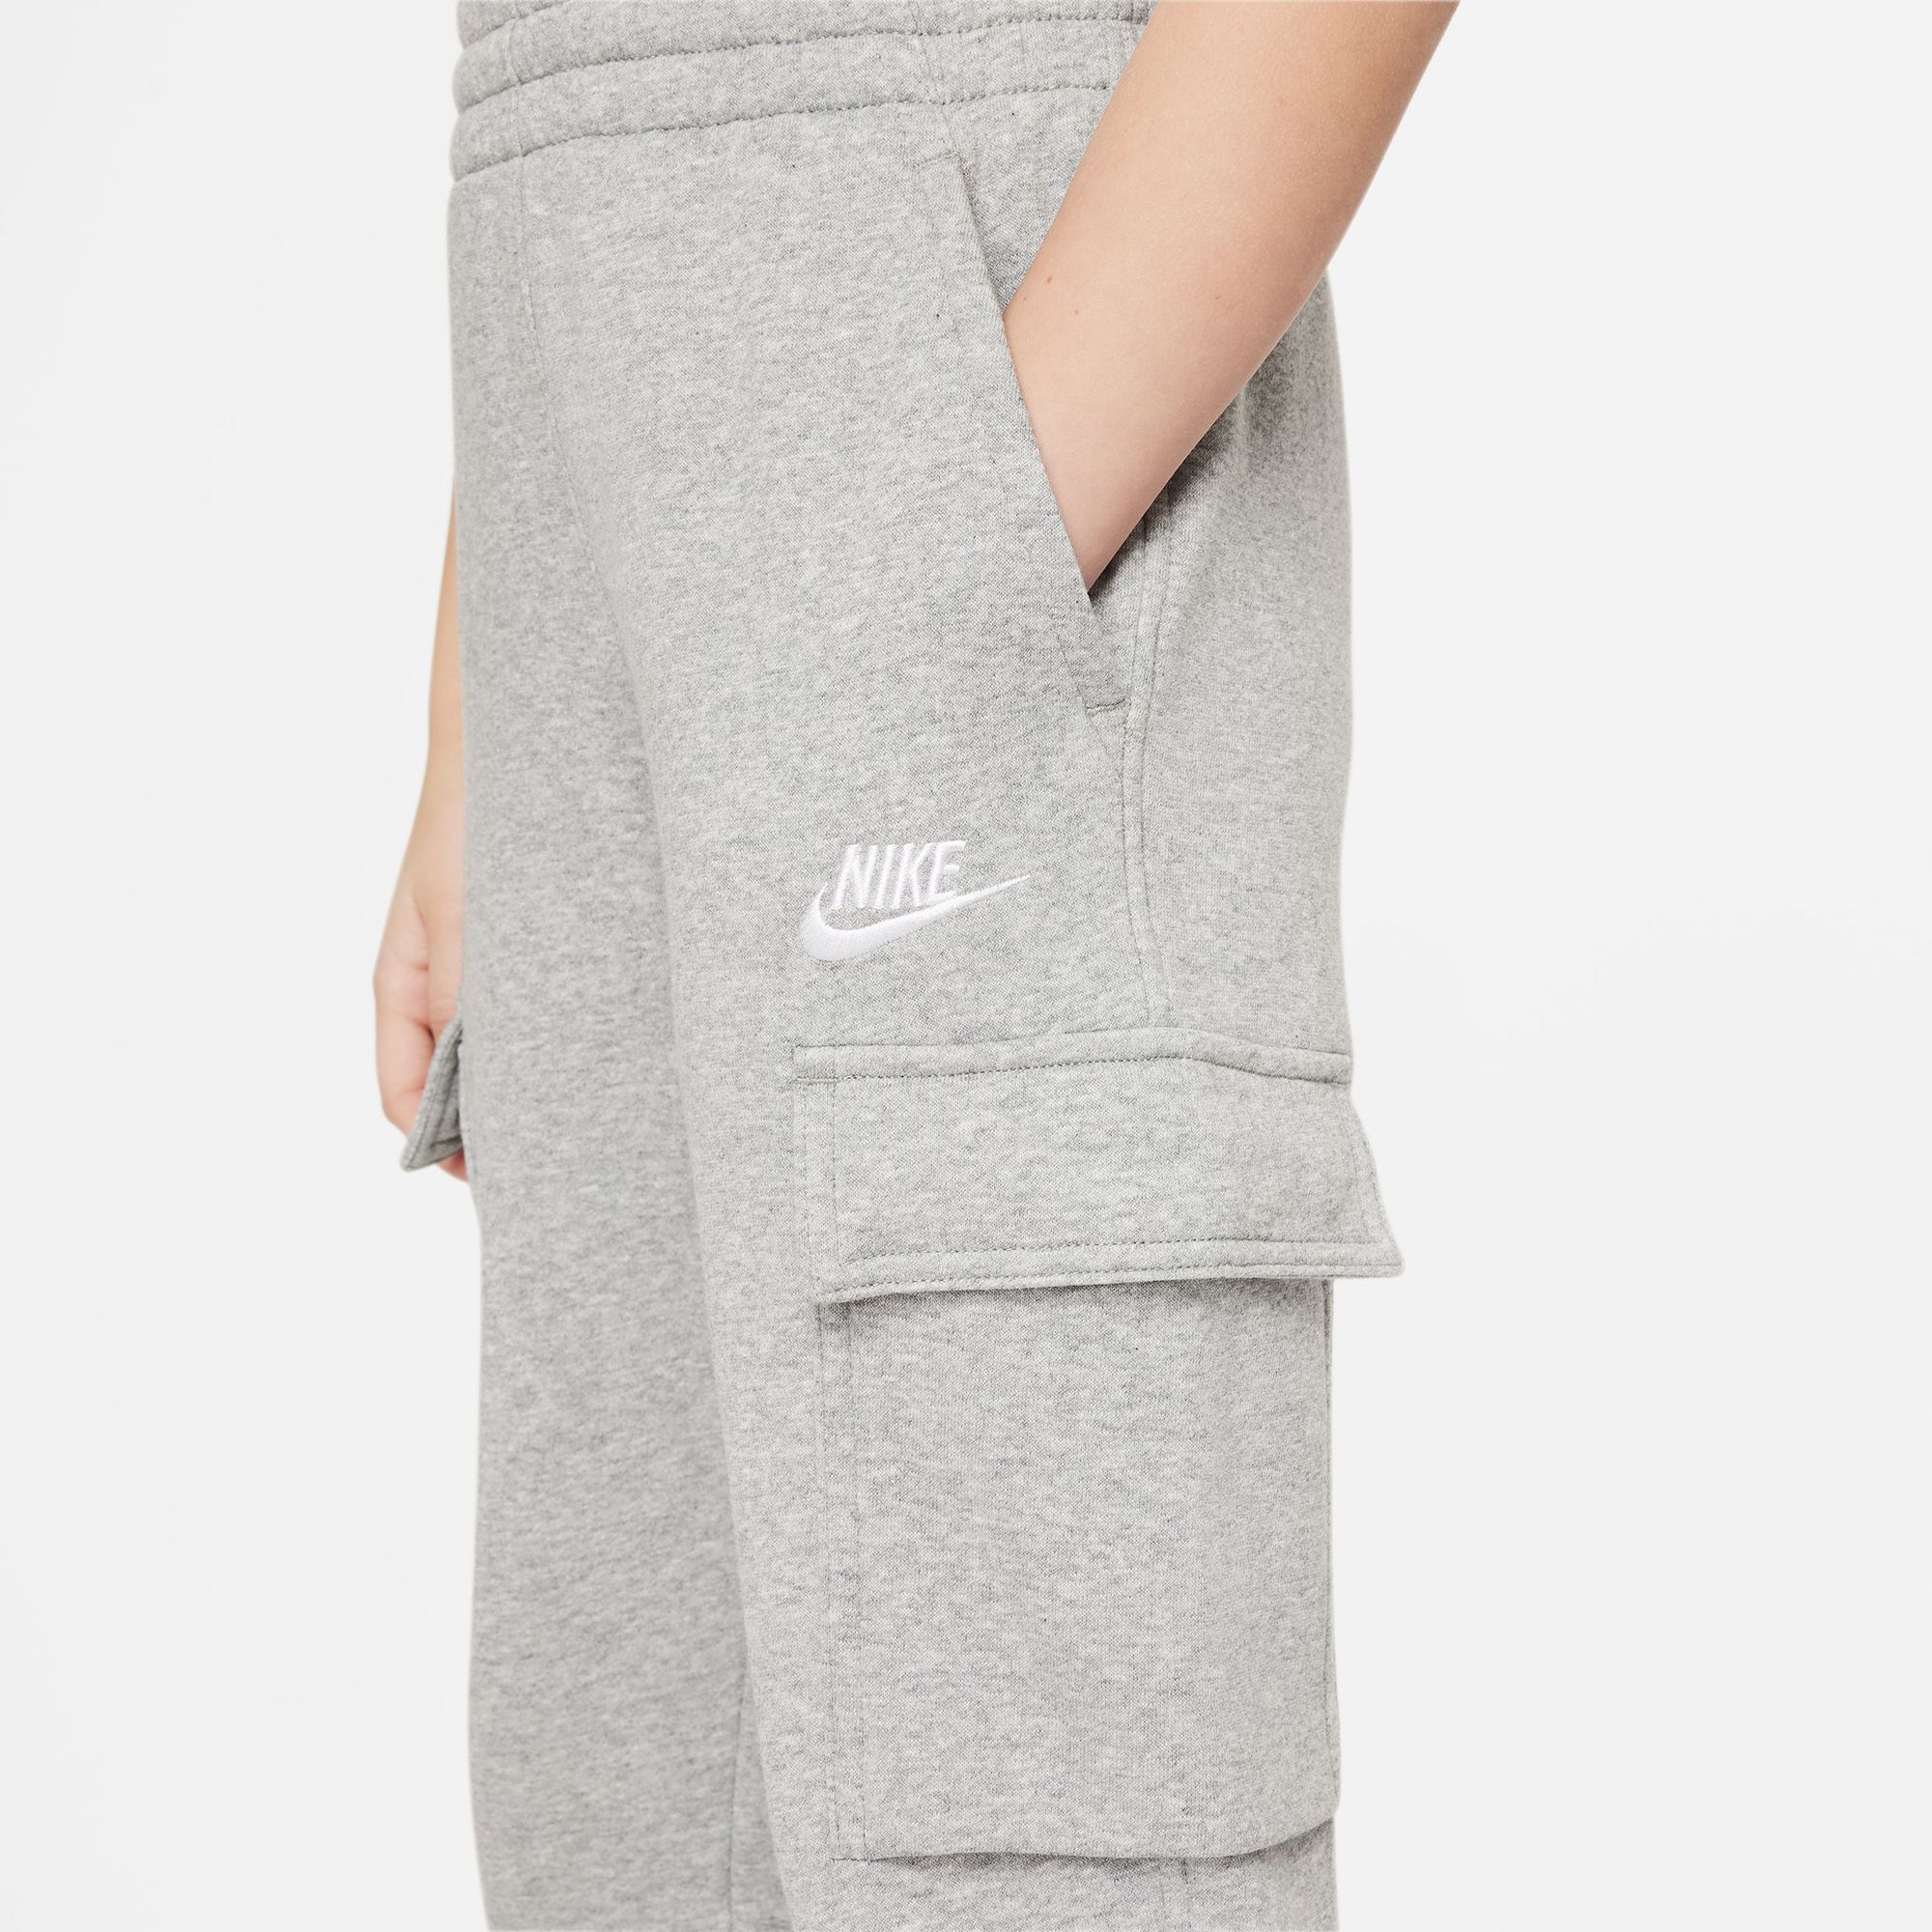 Nike All Kids Fit Sportswear Club Fleece Cargo Pants